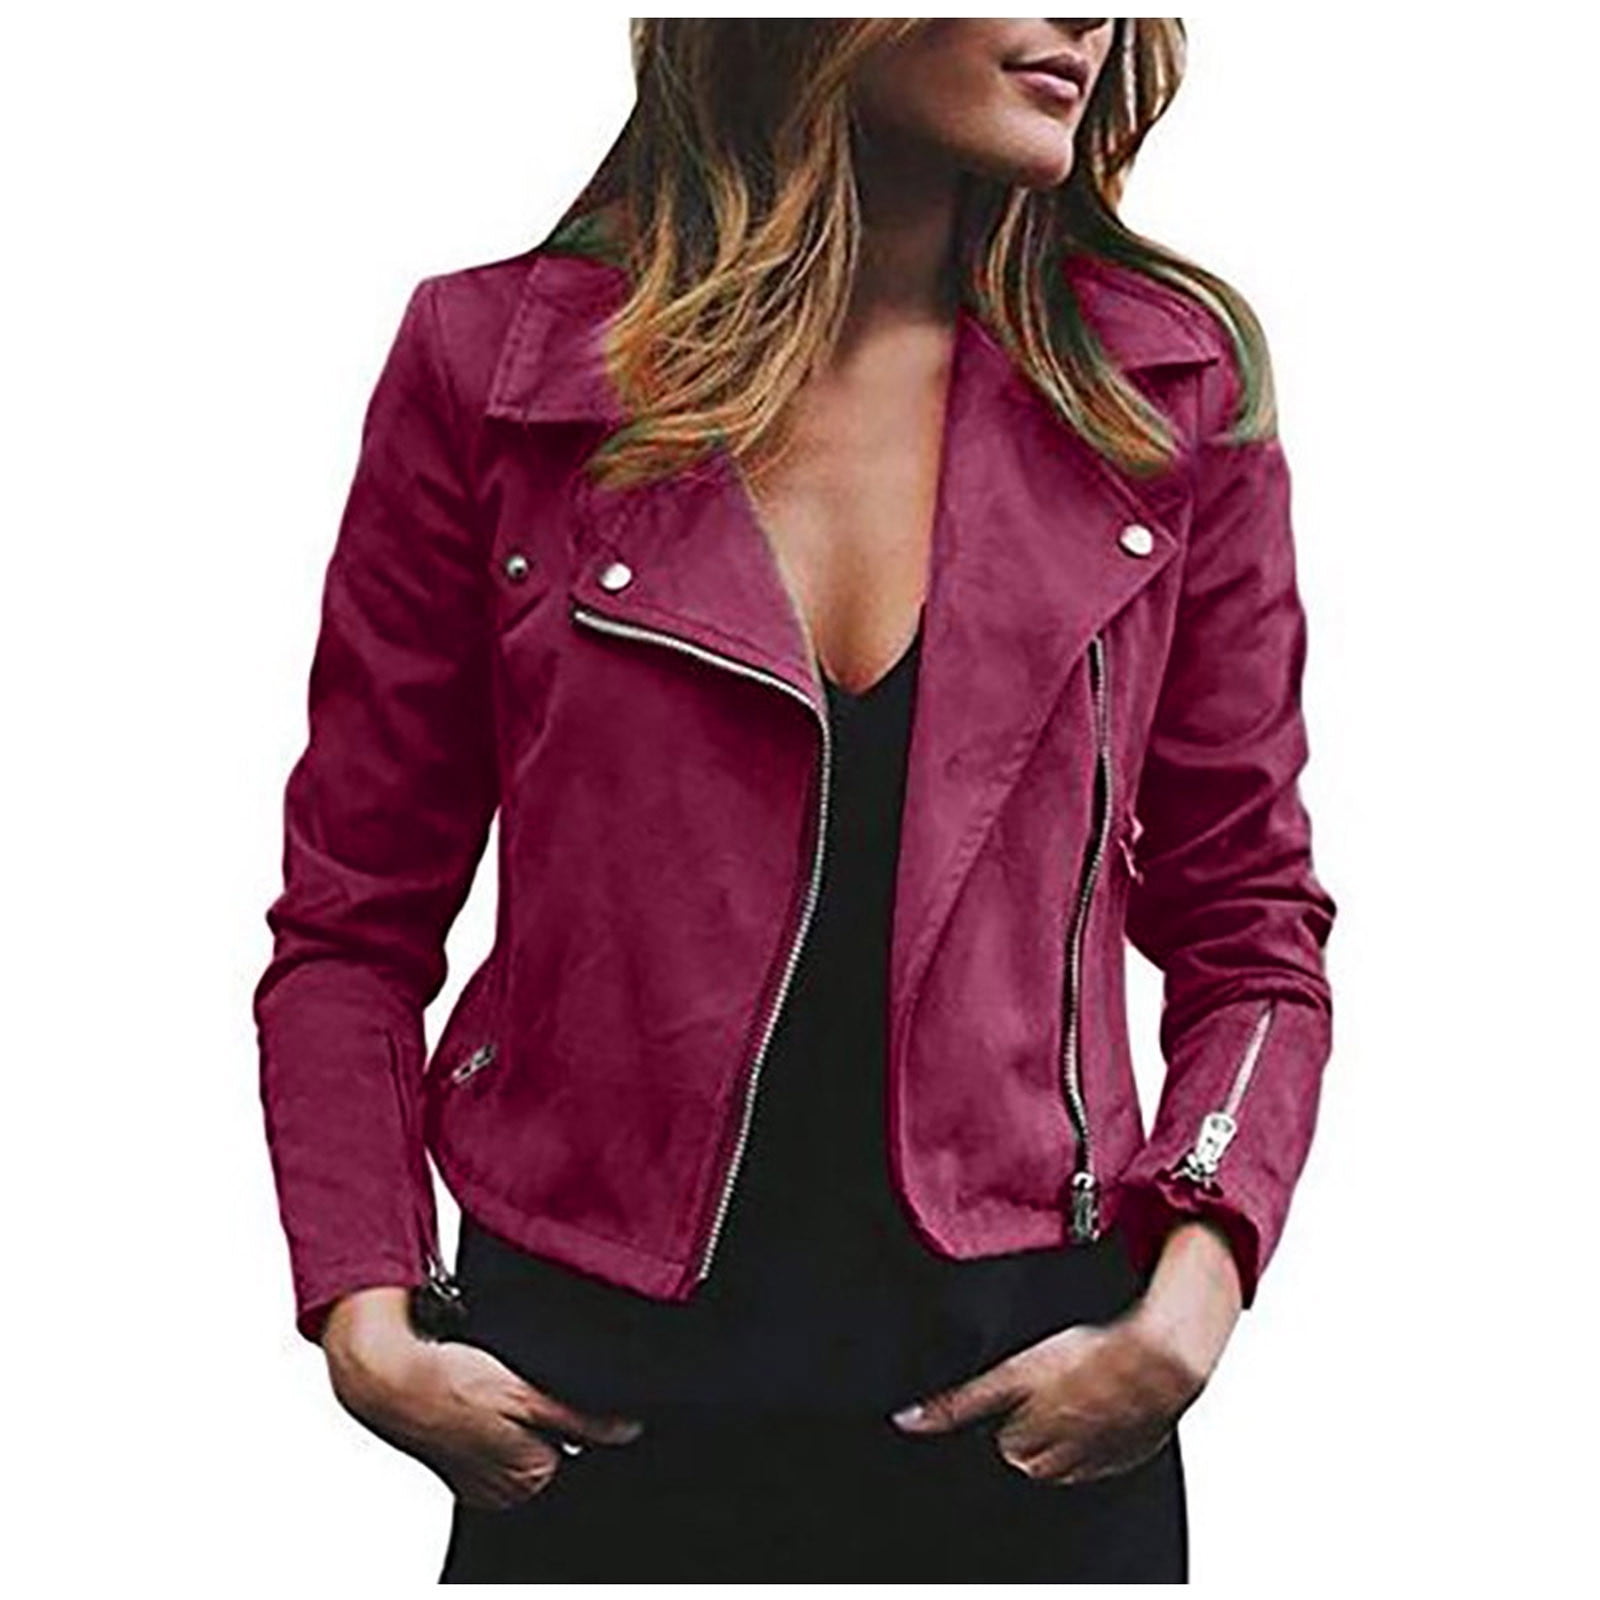 Matériel Asymmetric Faux Leather Blazer in Pink